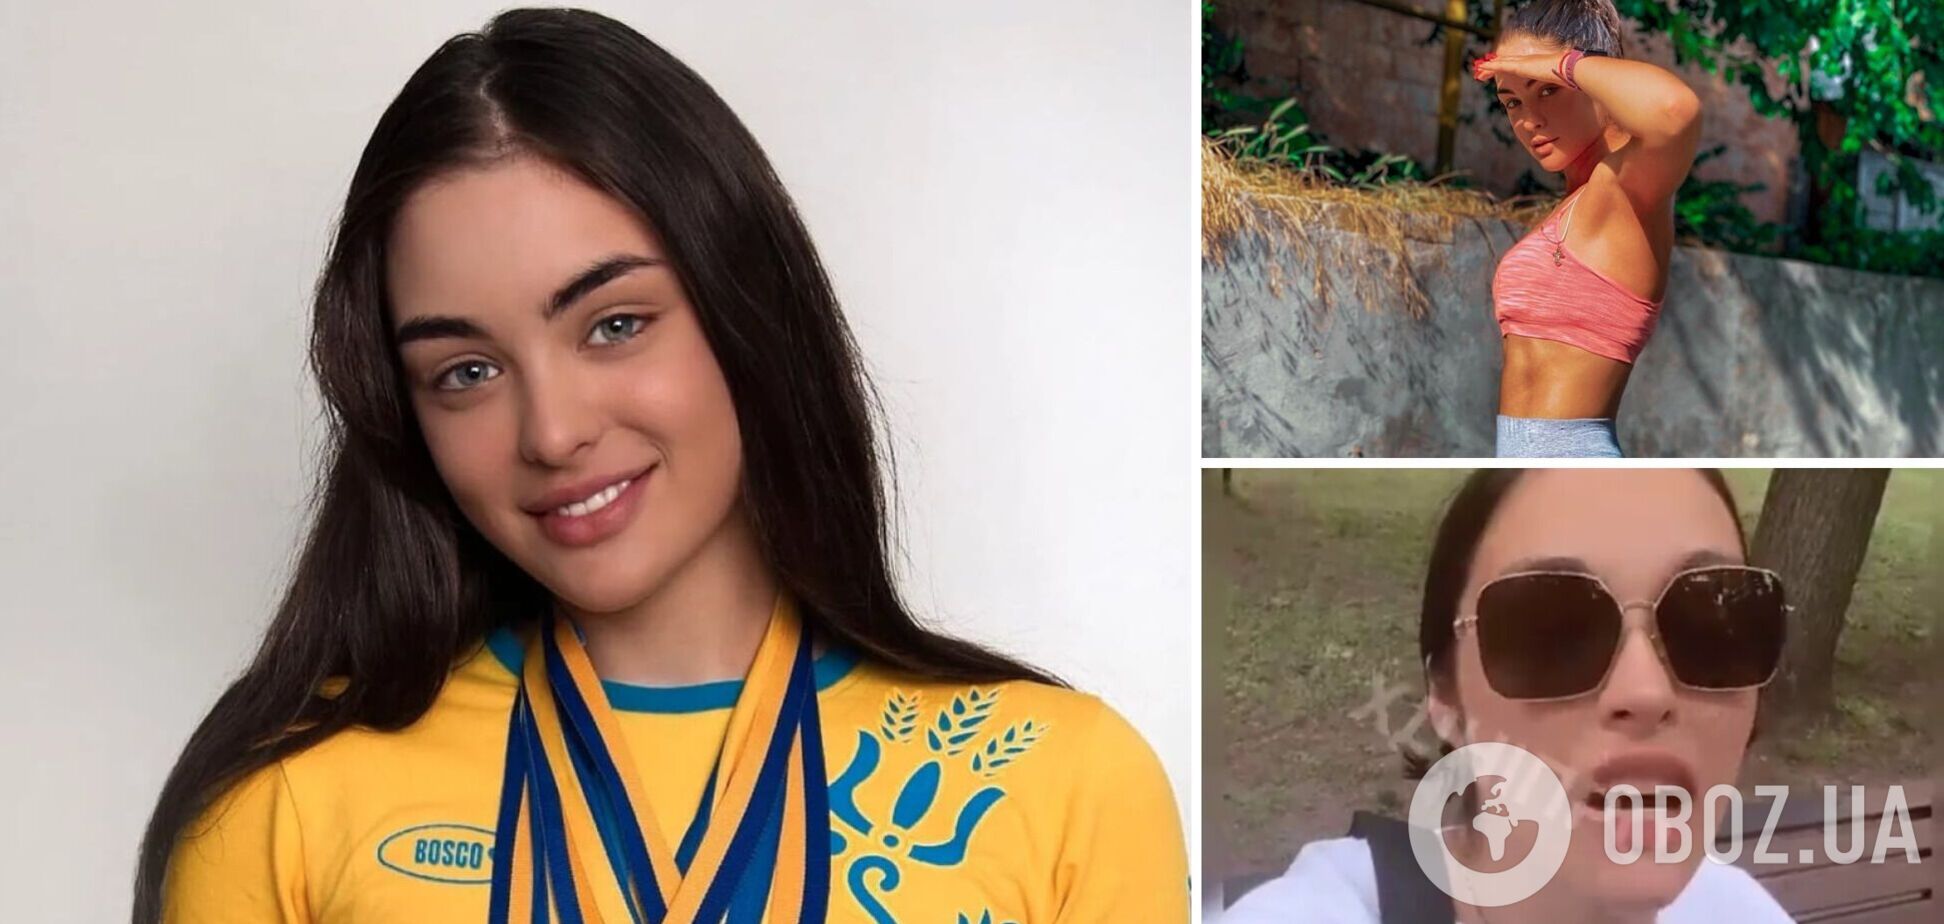 В деле чемпионки Украины, которая назвала украинцев 'кон*енными п***расами', случился 'неожиданный' поворот